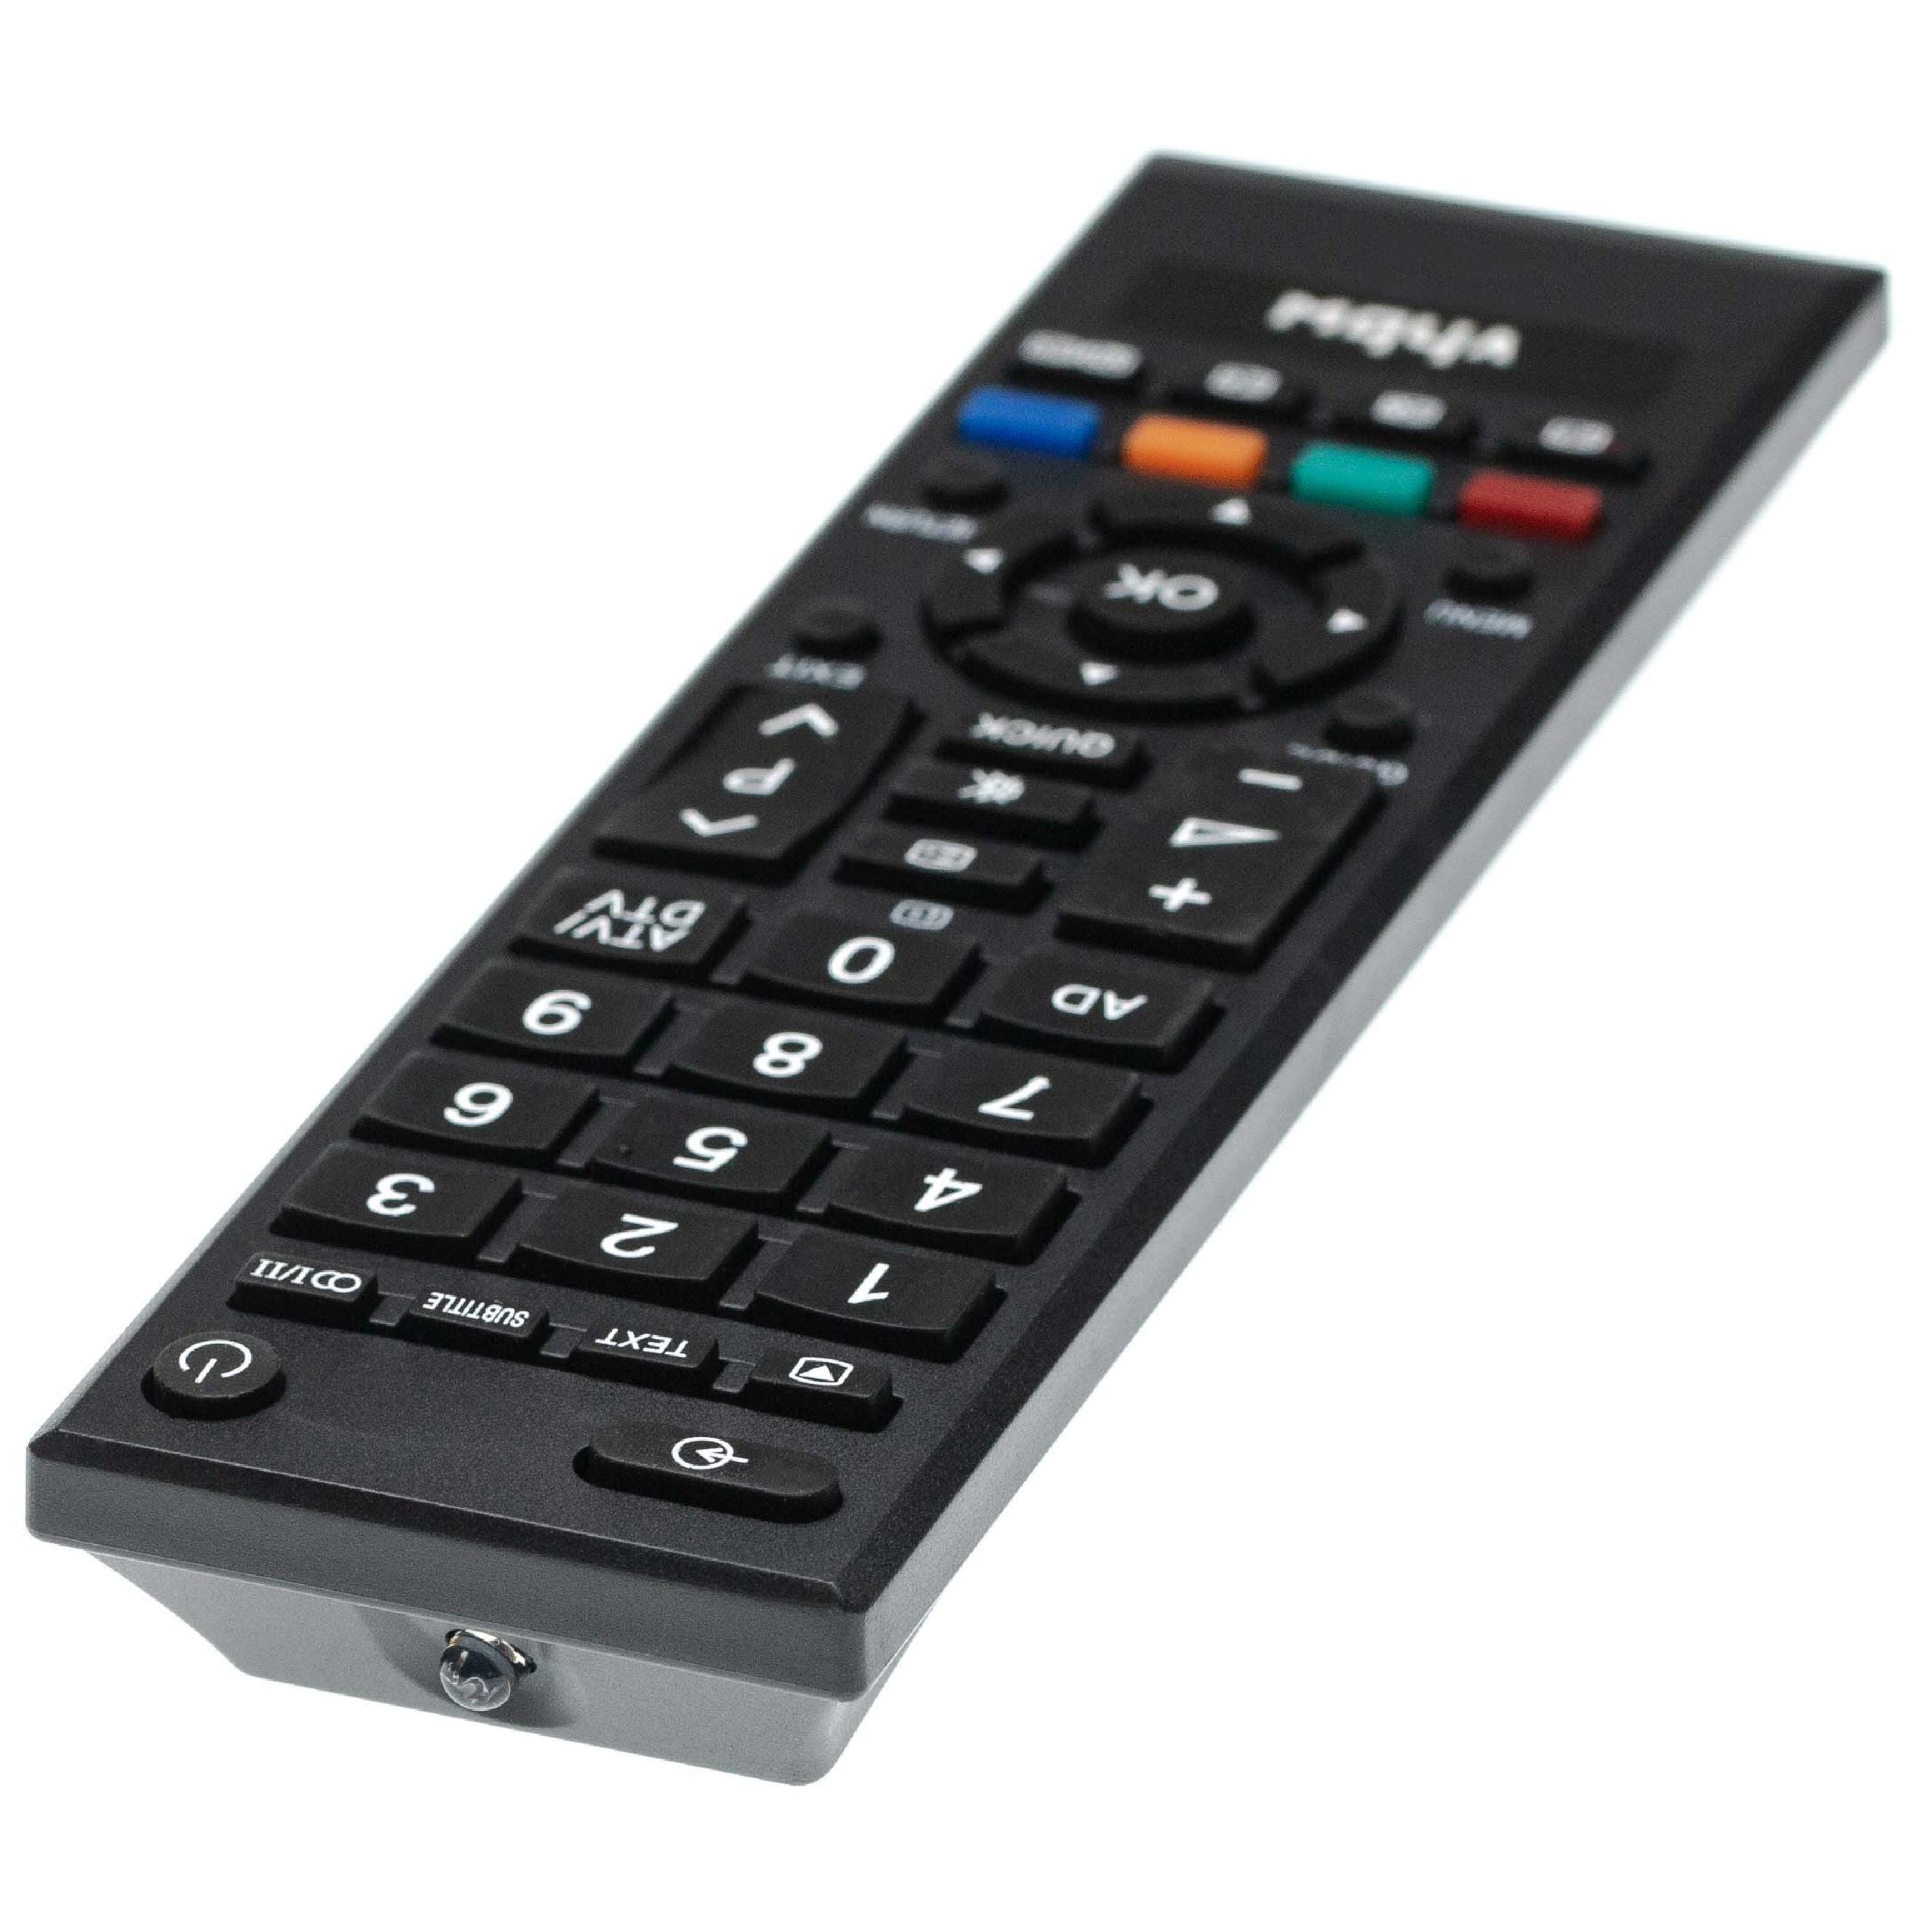 Vhbw Télécommande compatible pour Toshiba 40LV665D, 40LV665DB, 40LV675D,  40LV685D, 40LV703, 40LV703G télévision, TV - télécommande de rechange